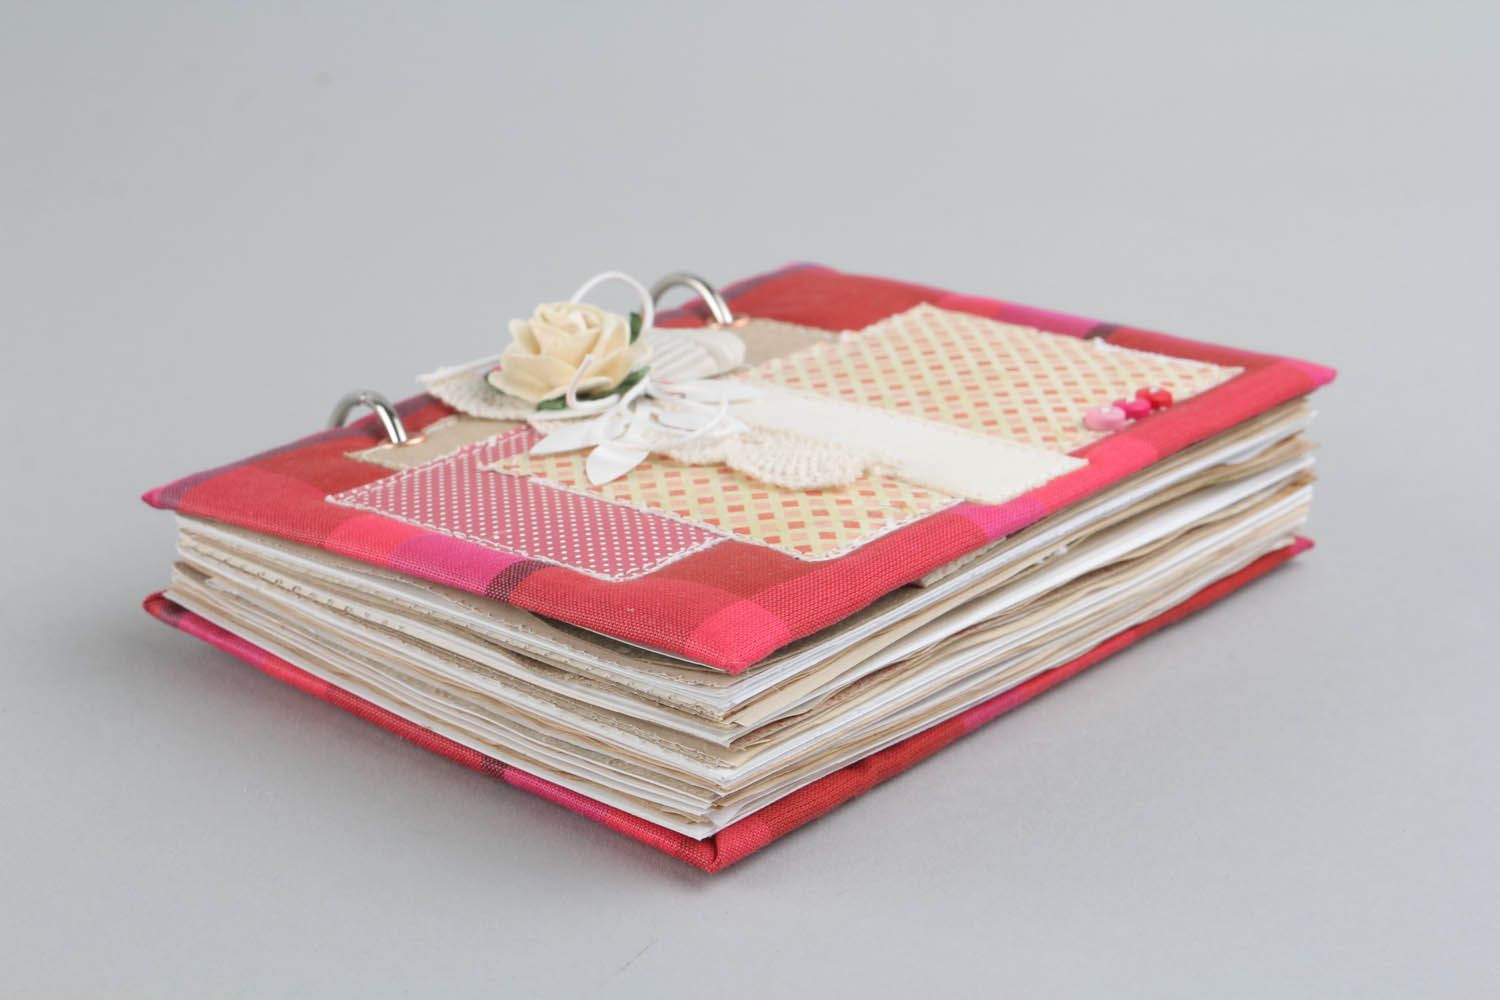 Livro de receitas artesanal de autor decorado na técnica de scrapbooking usando tecido de algodão foto 3